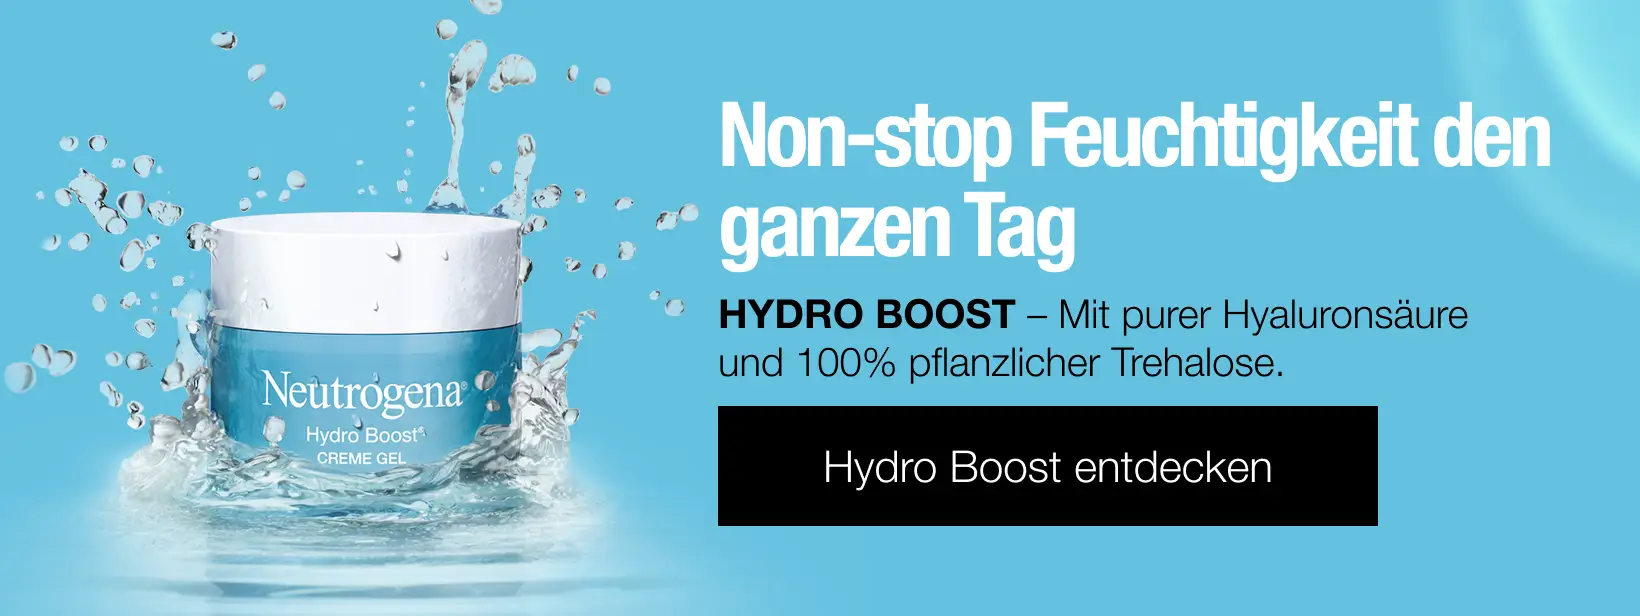 Hydro Boost - Mit pure Hylaronsäure und 100% pflanzlicher Trehalose